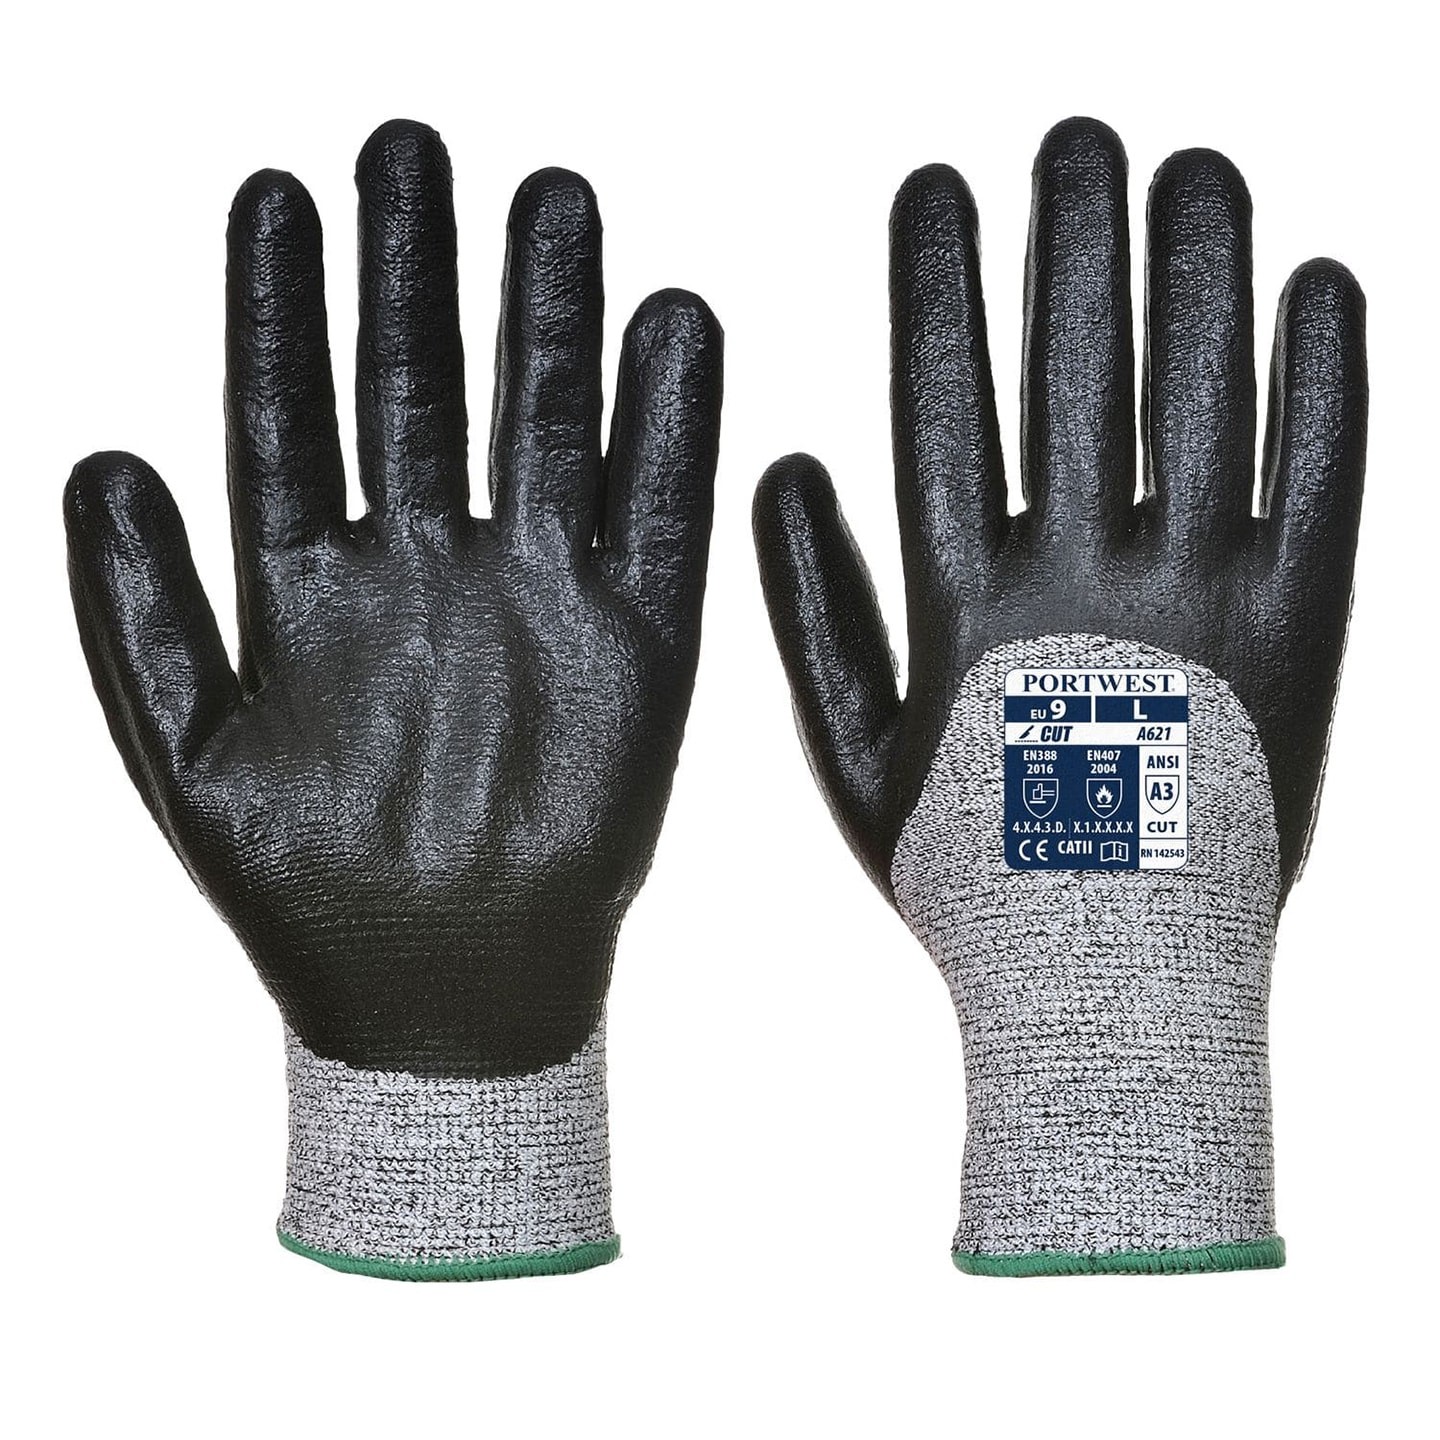 Portwest Cut Nitrile Foam Glove